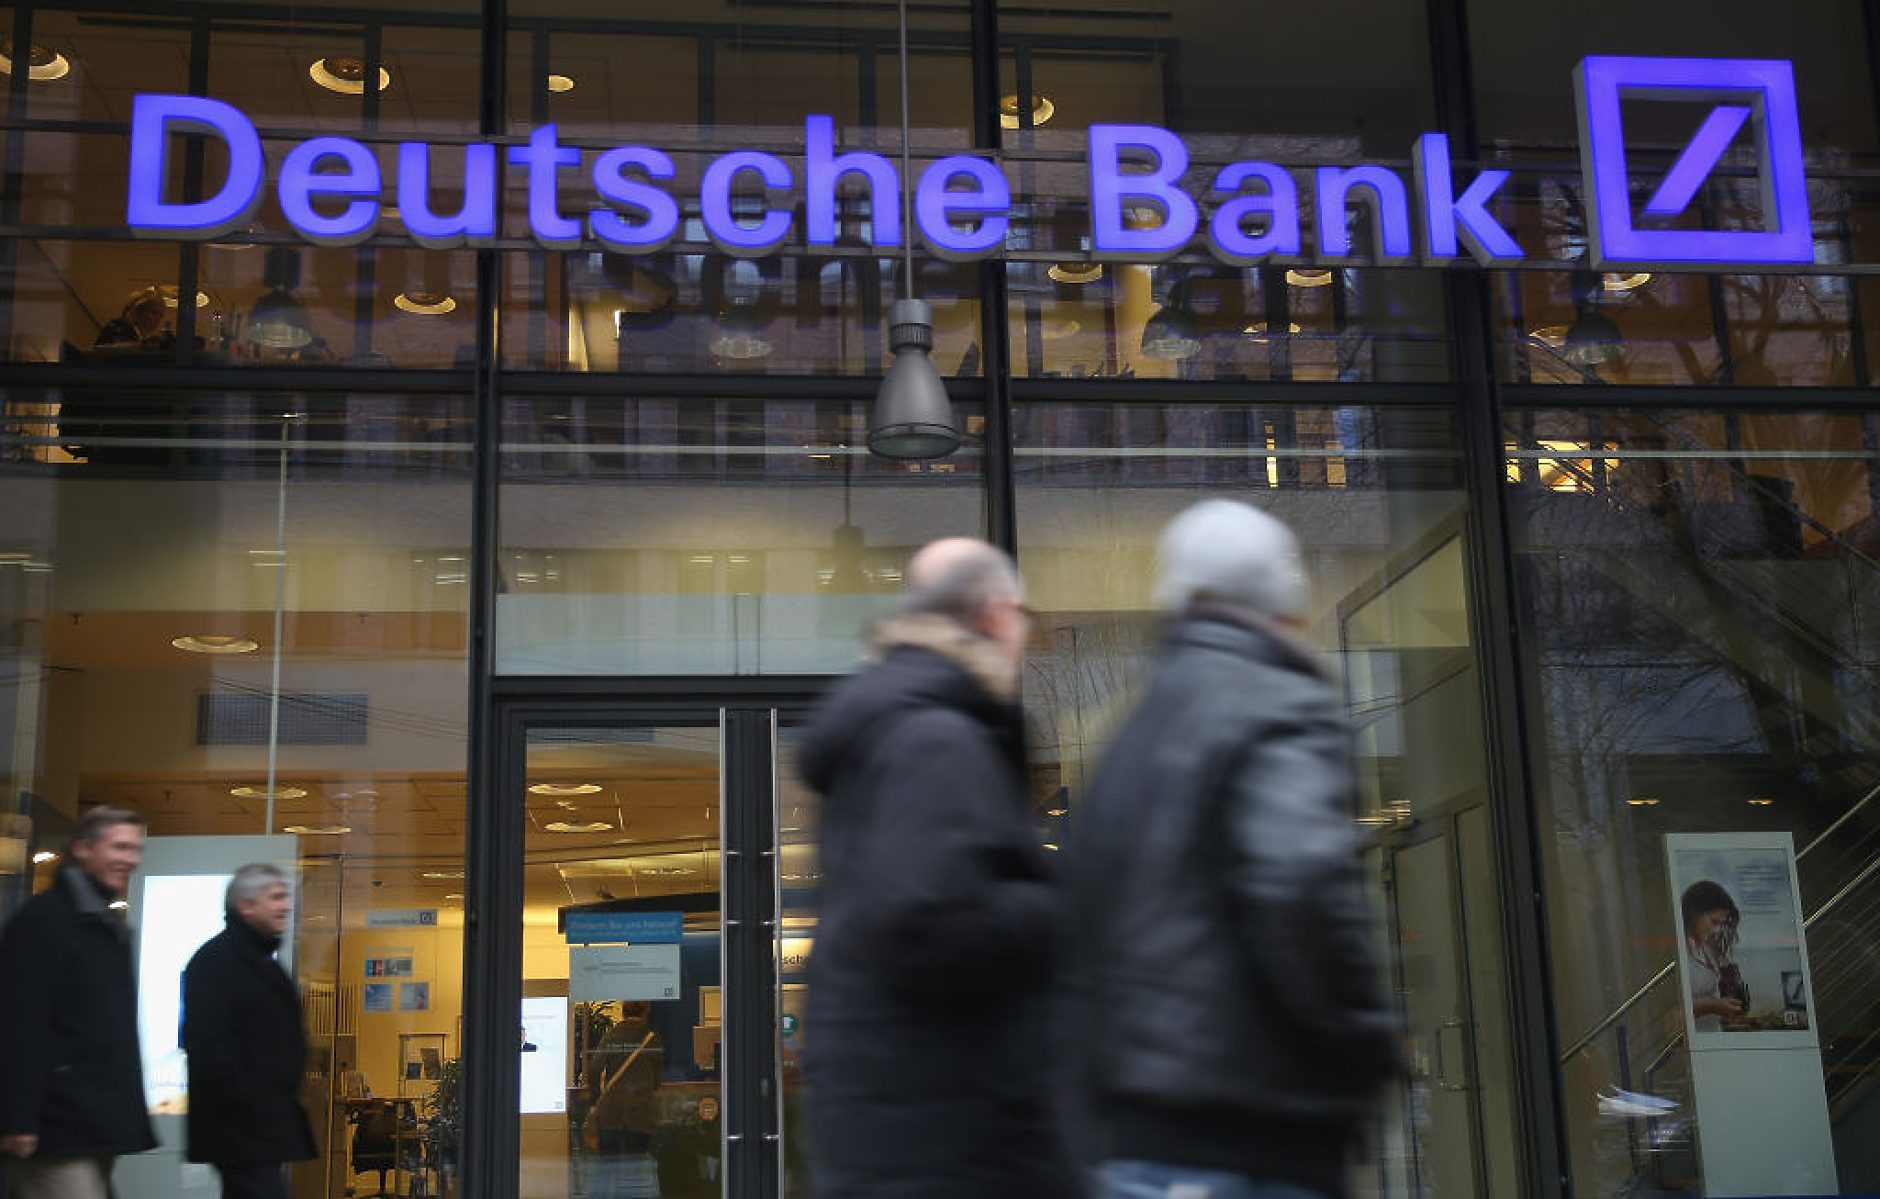 Deutsche Bank се отказа от обраното изкупуване на акции след първата тримесечна загуба от четири години